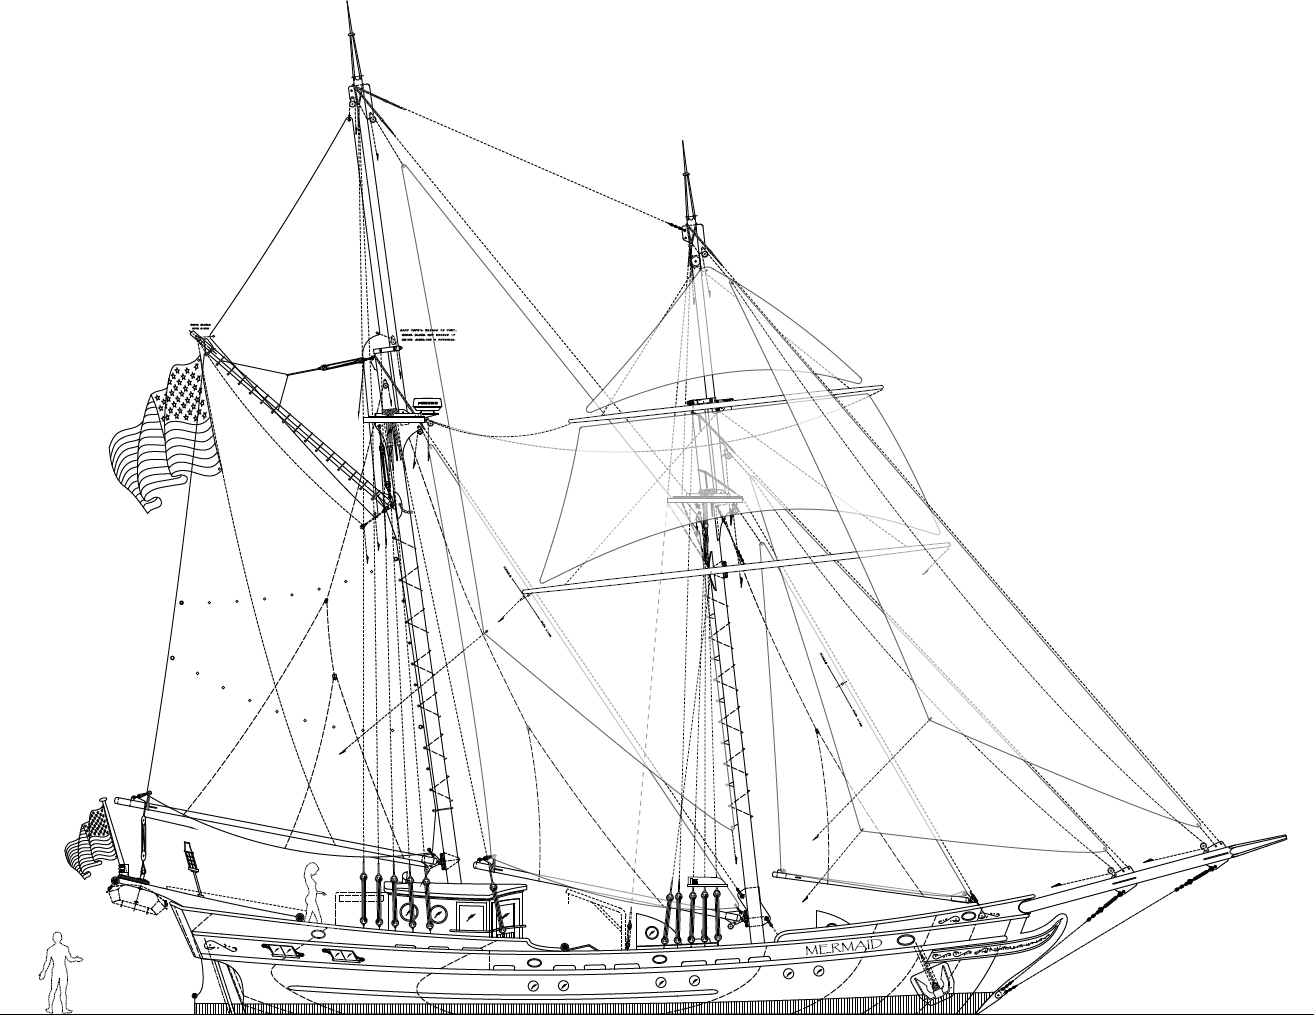 61' MERMAID - An Authentic 1700's Brigantine by Kasten Marine Design 